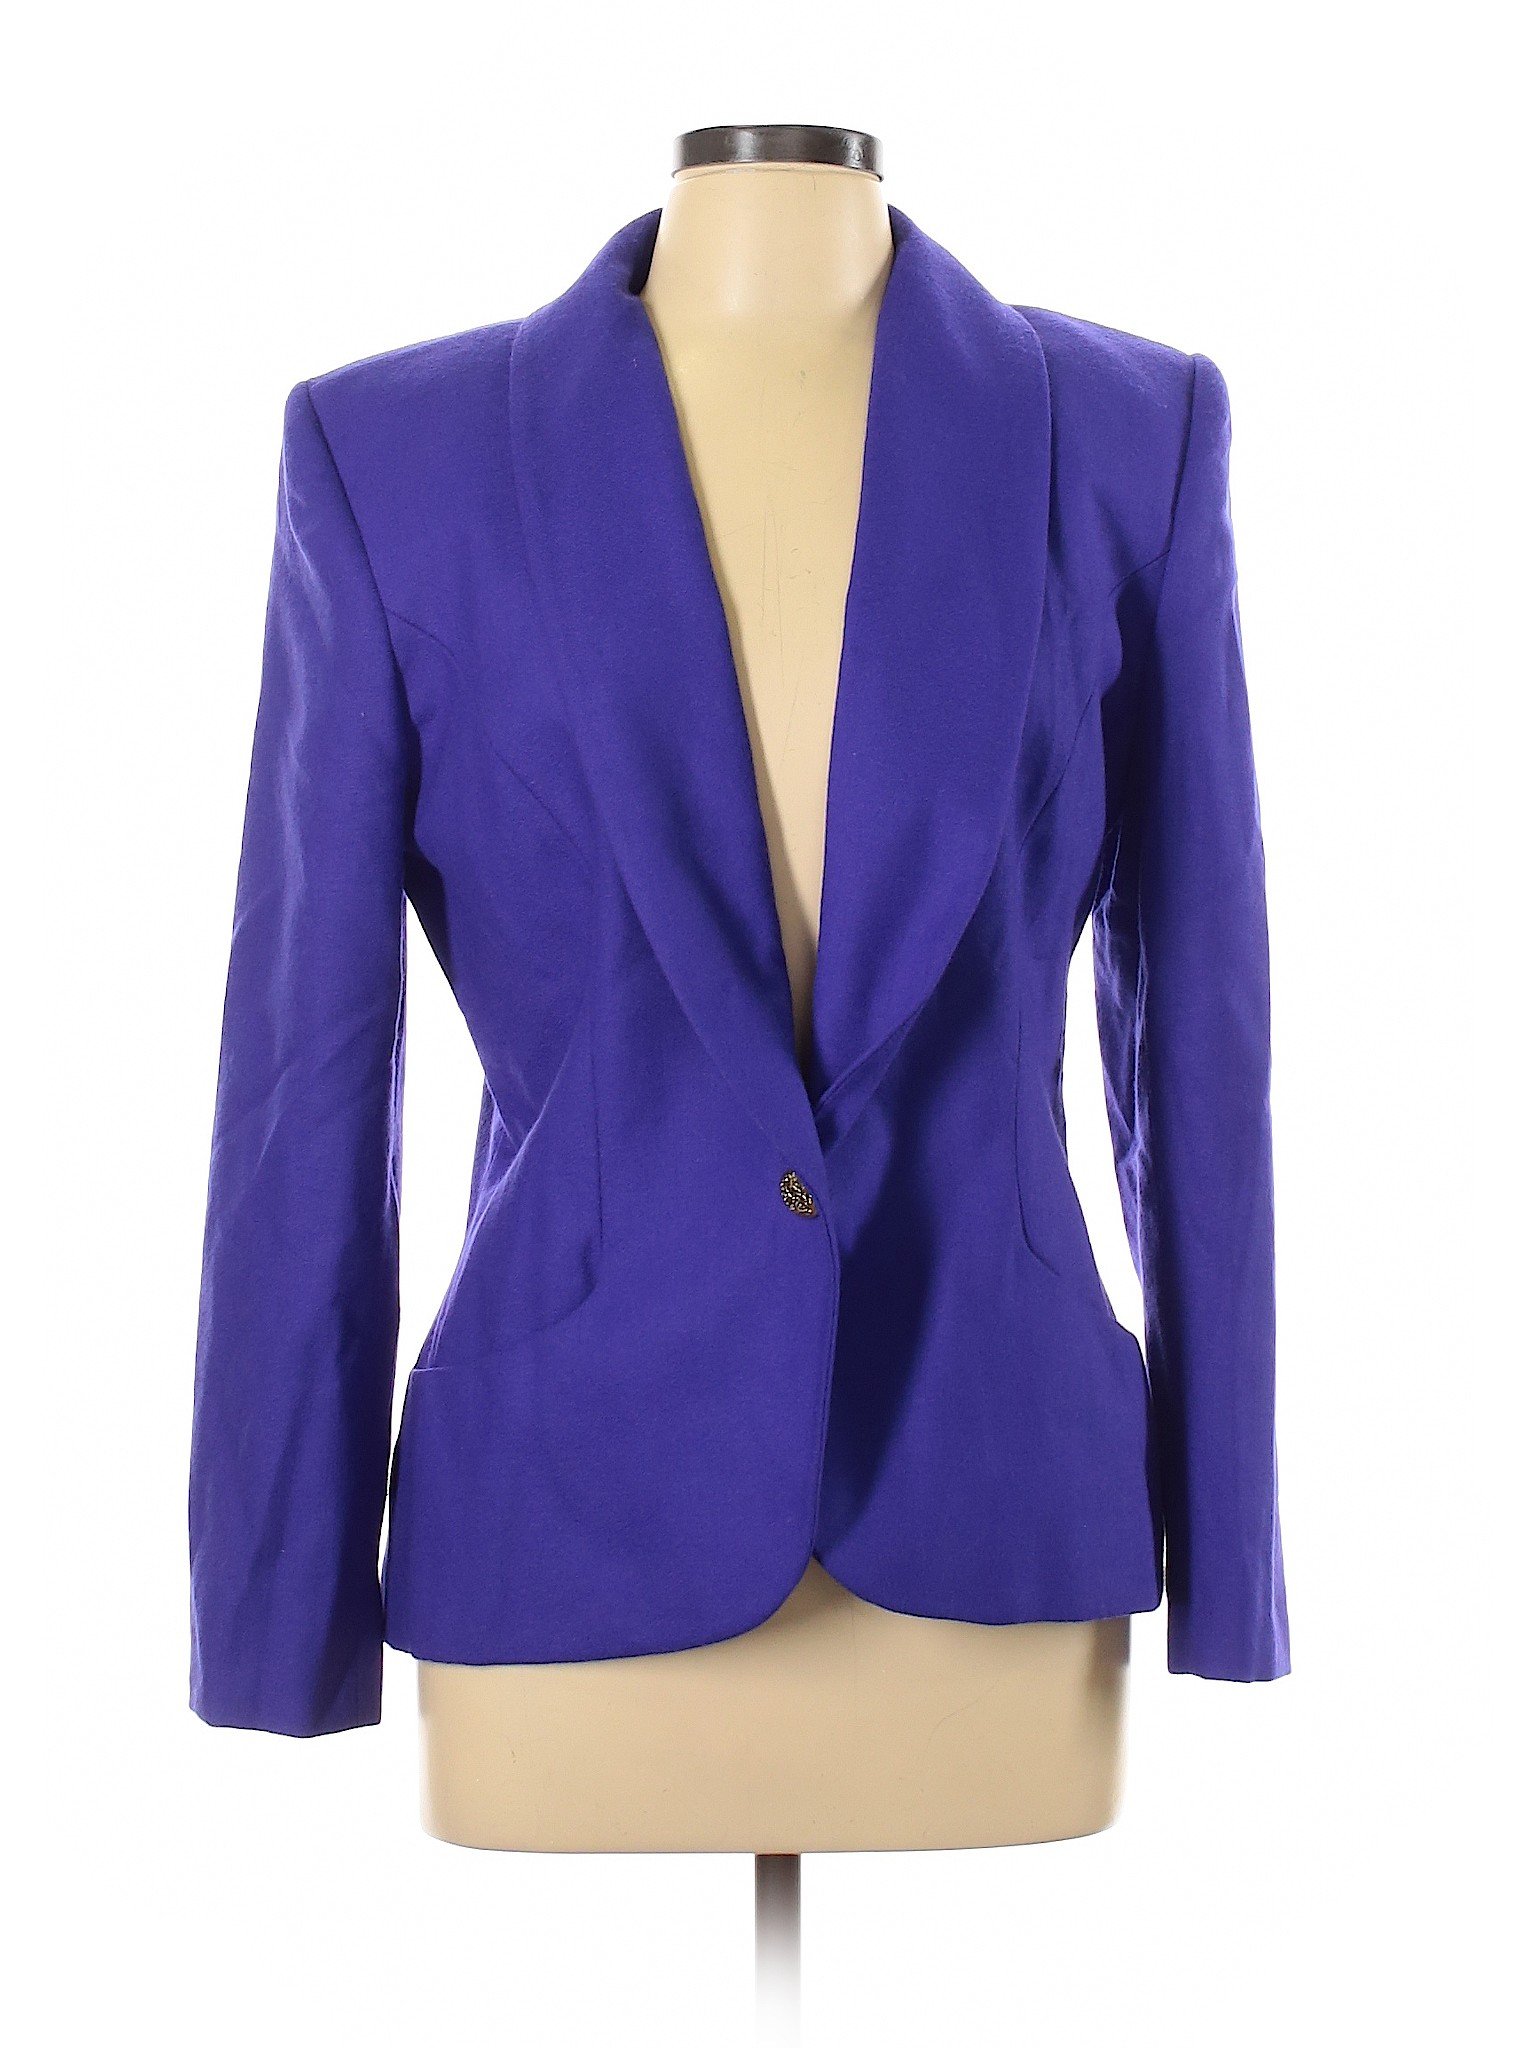 Prophecy Women Purple Wool Blazer 4 | eBay